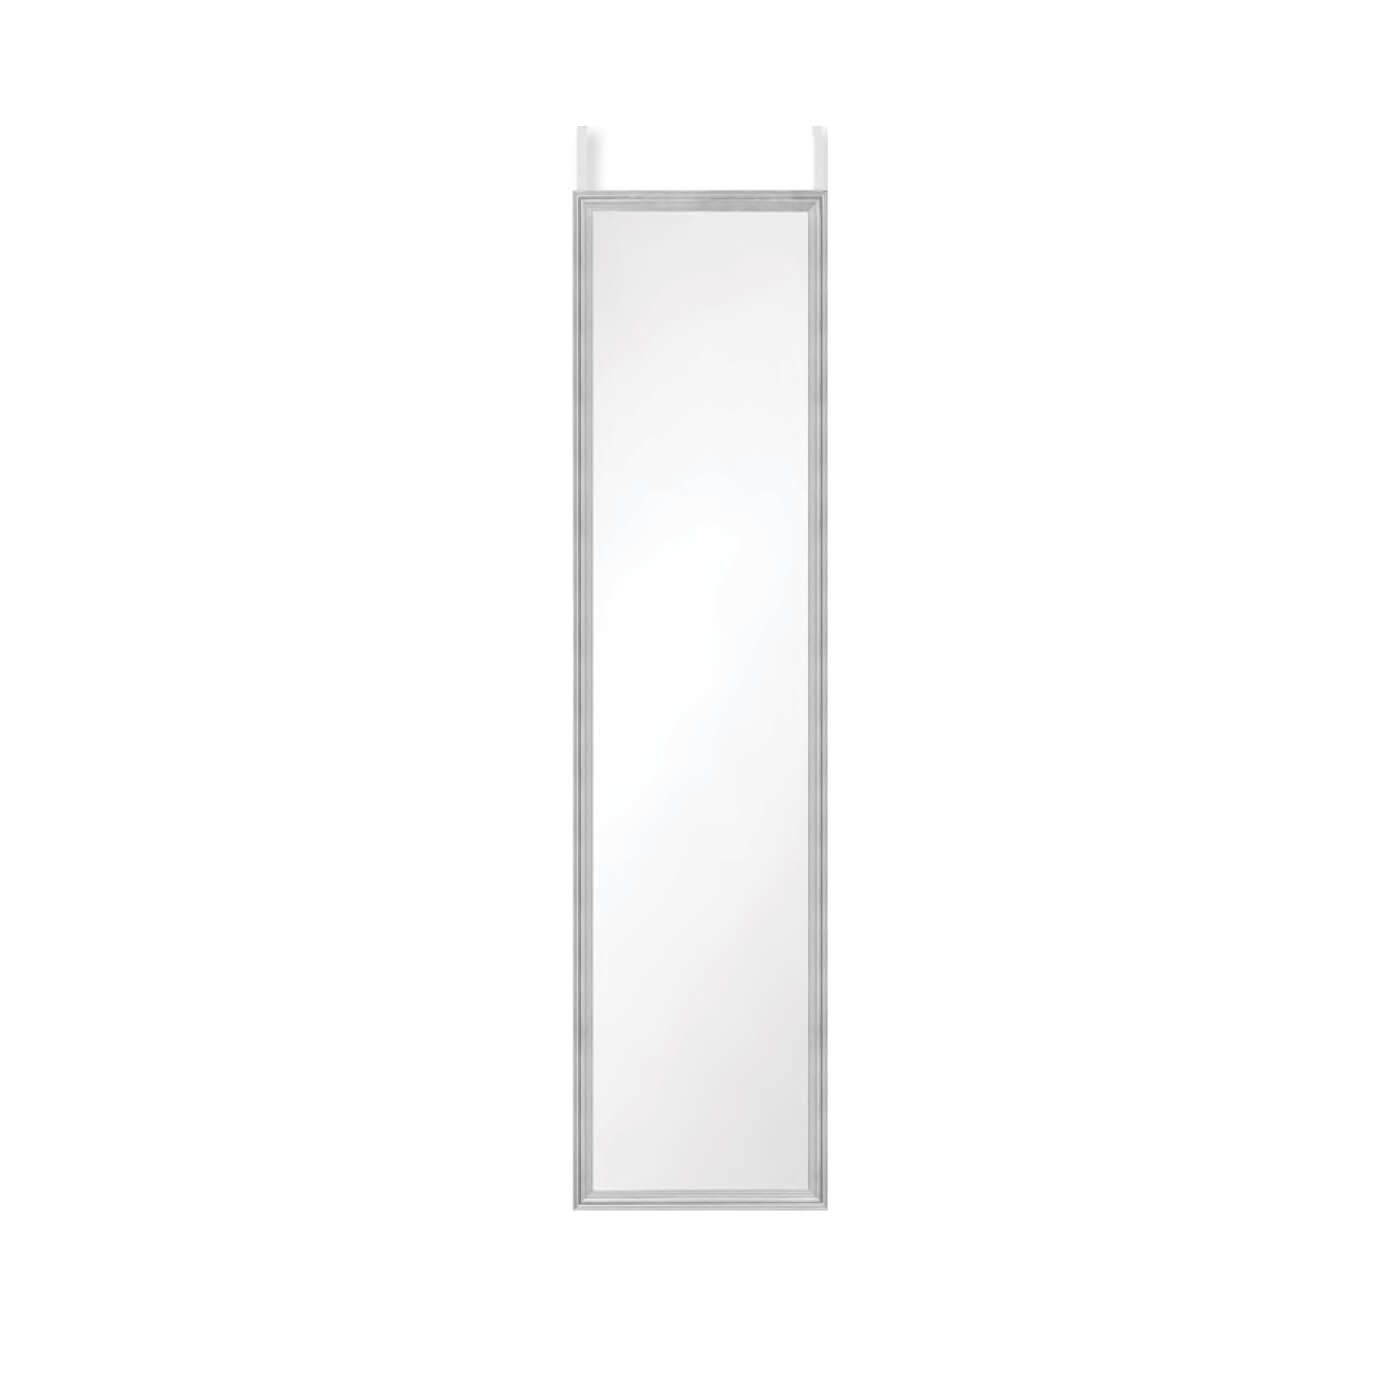 Cauti o oglinda BEA 30x120 argintie, design modern, simplu, pentru living sau dormitor?